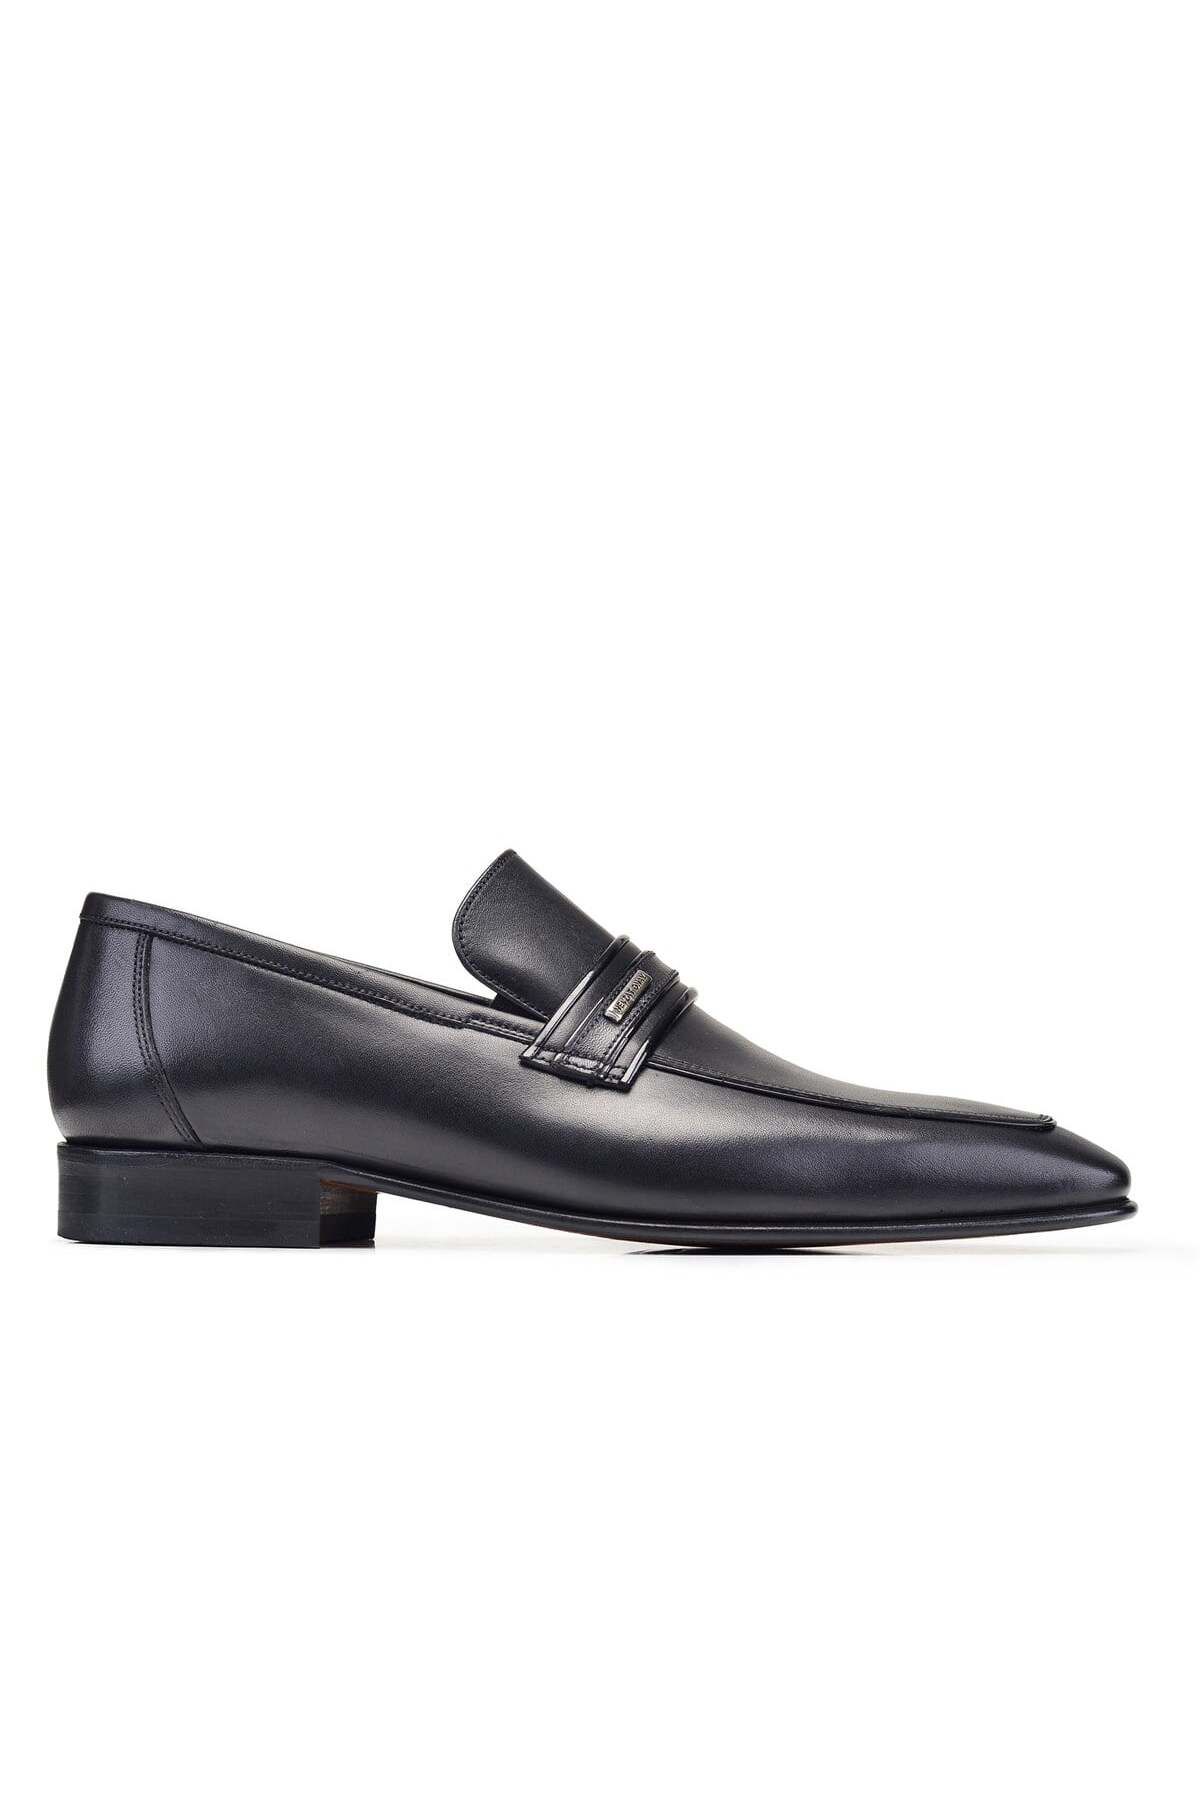 Nevzat Onay Siyah Loafer Klasik Erkek Ayakkabı -7095-